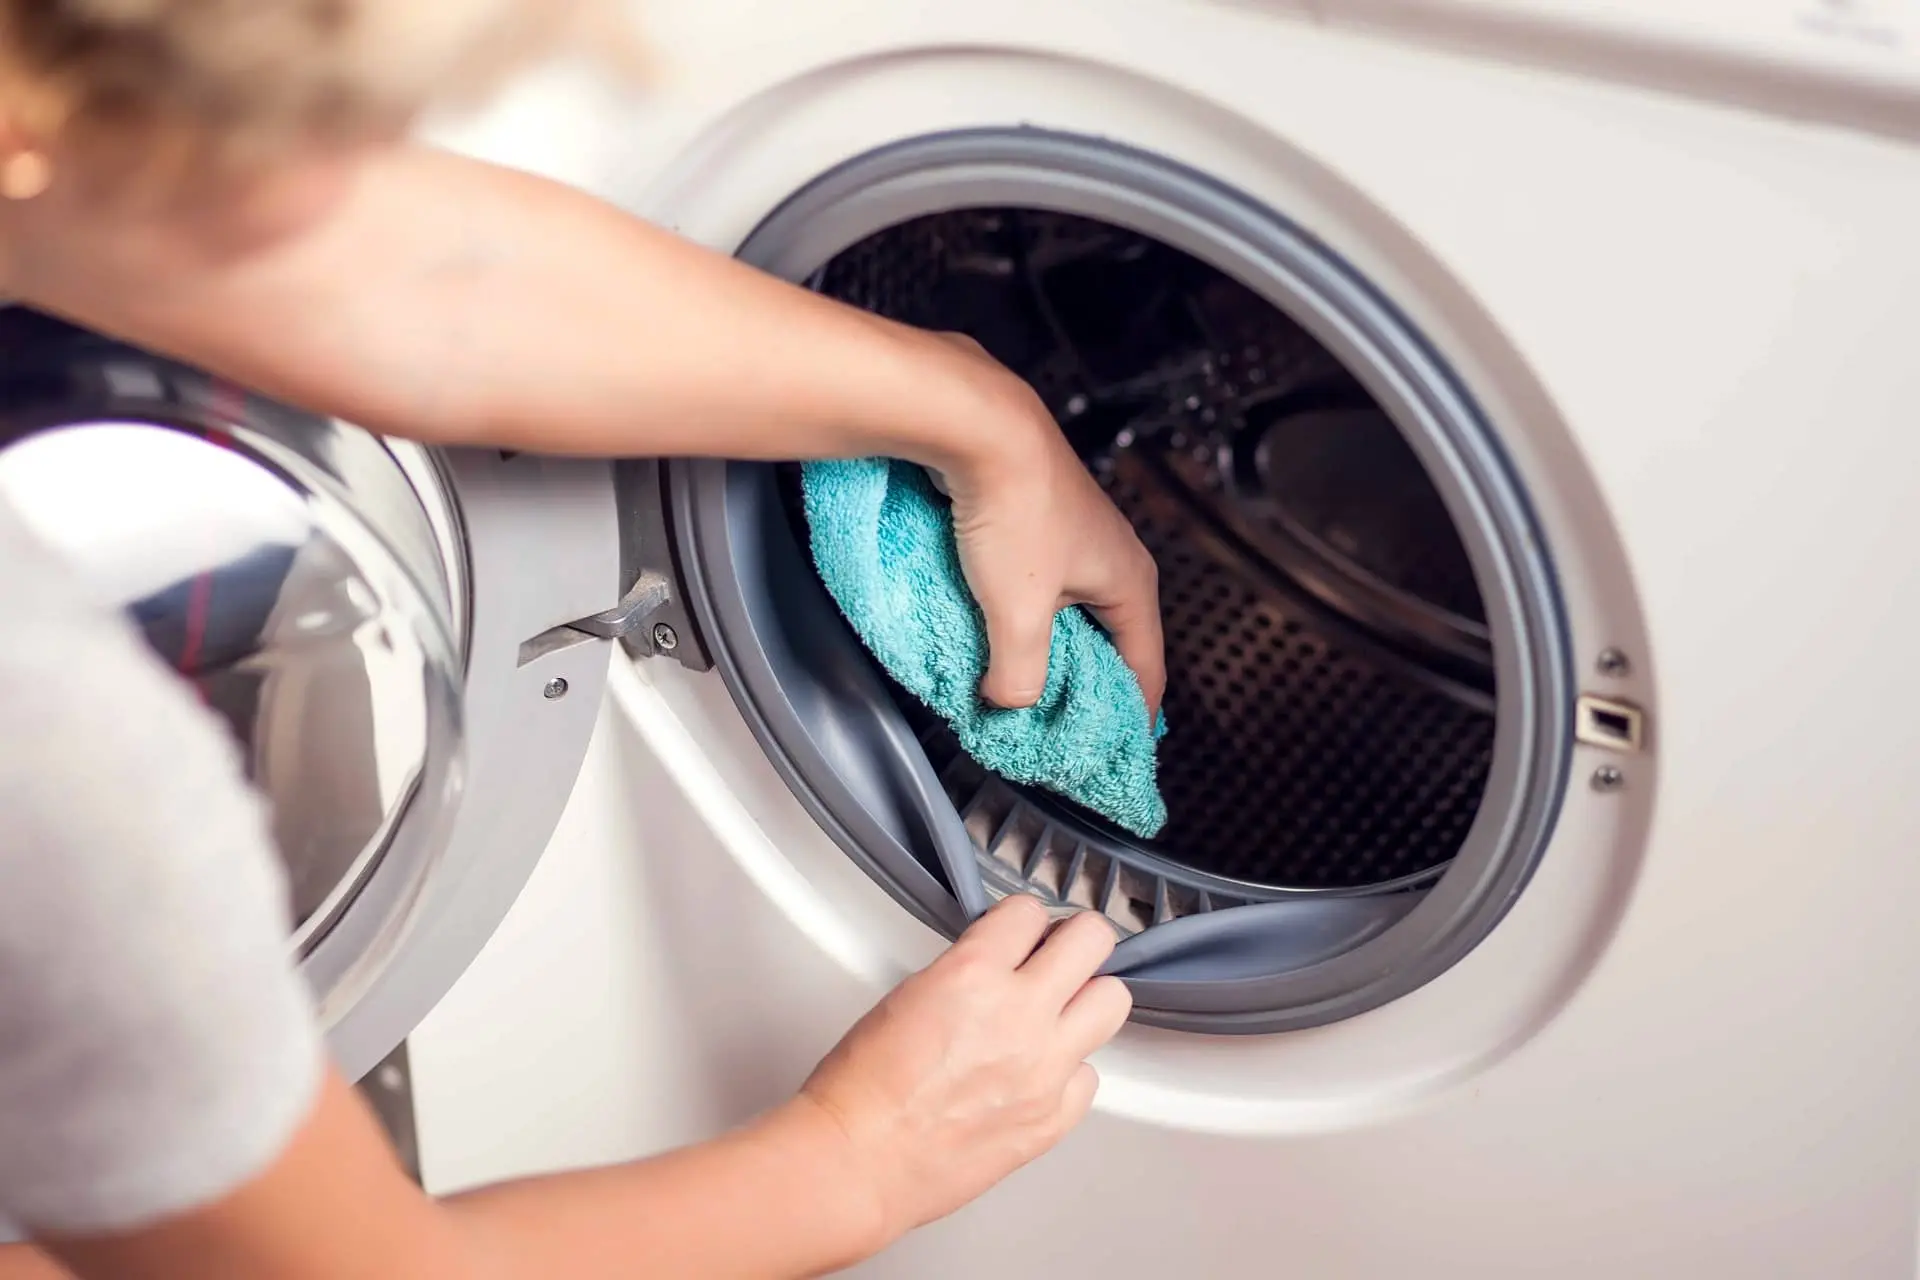 mantenimiento lavadoras - Cómo se hace el mantenimiento de una lavadora